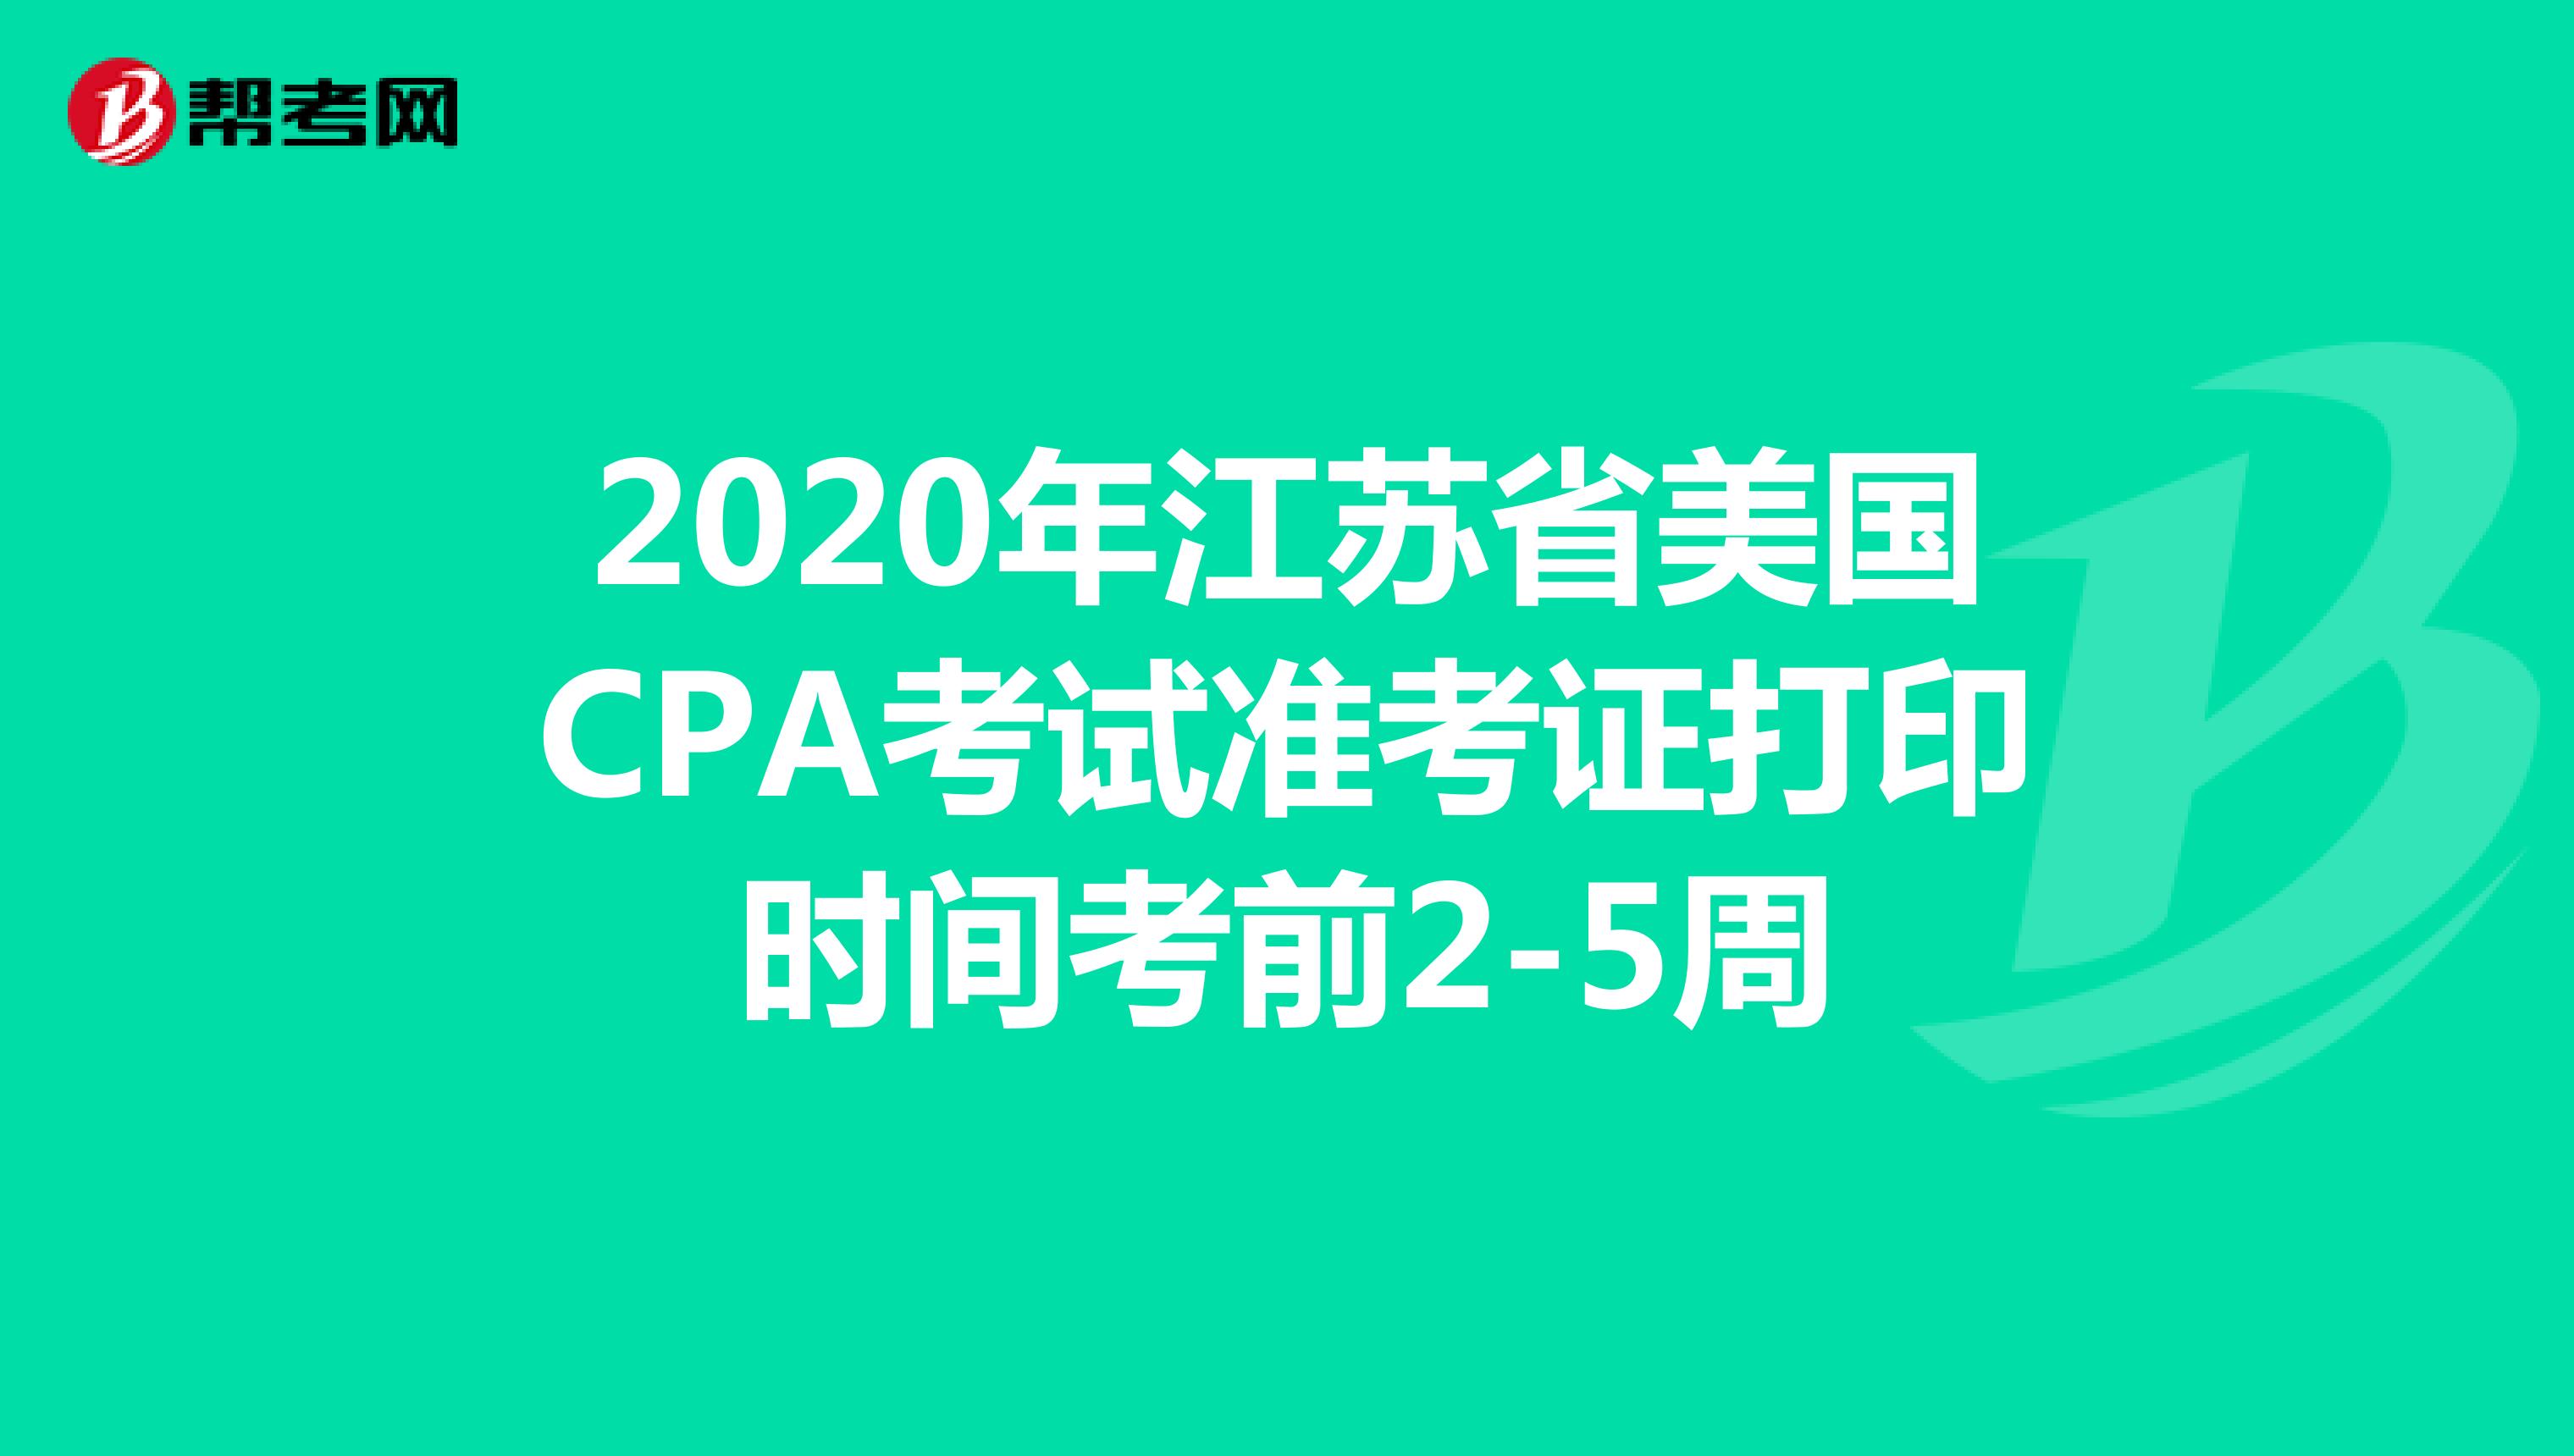 2020年江苏省美国CPA考试准考证打印时间考前2-5周